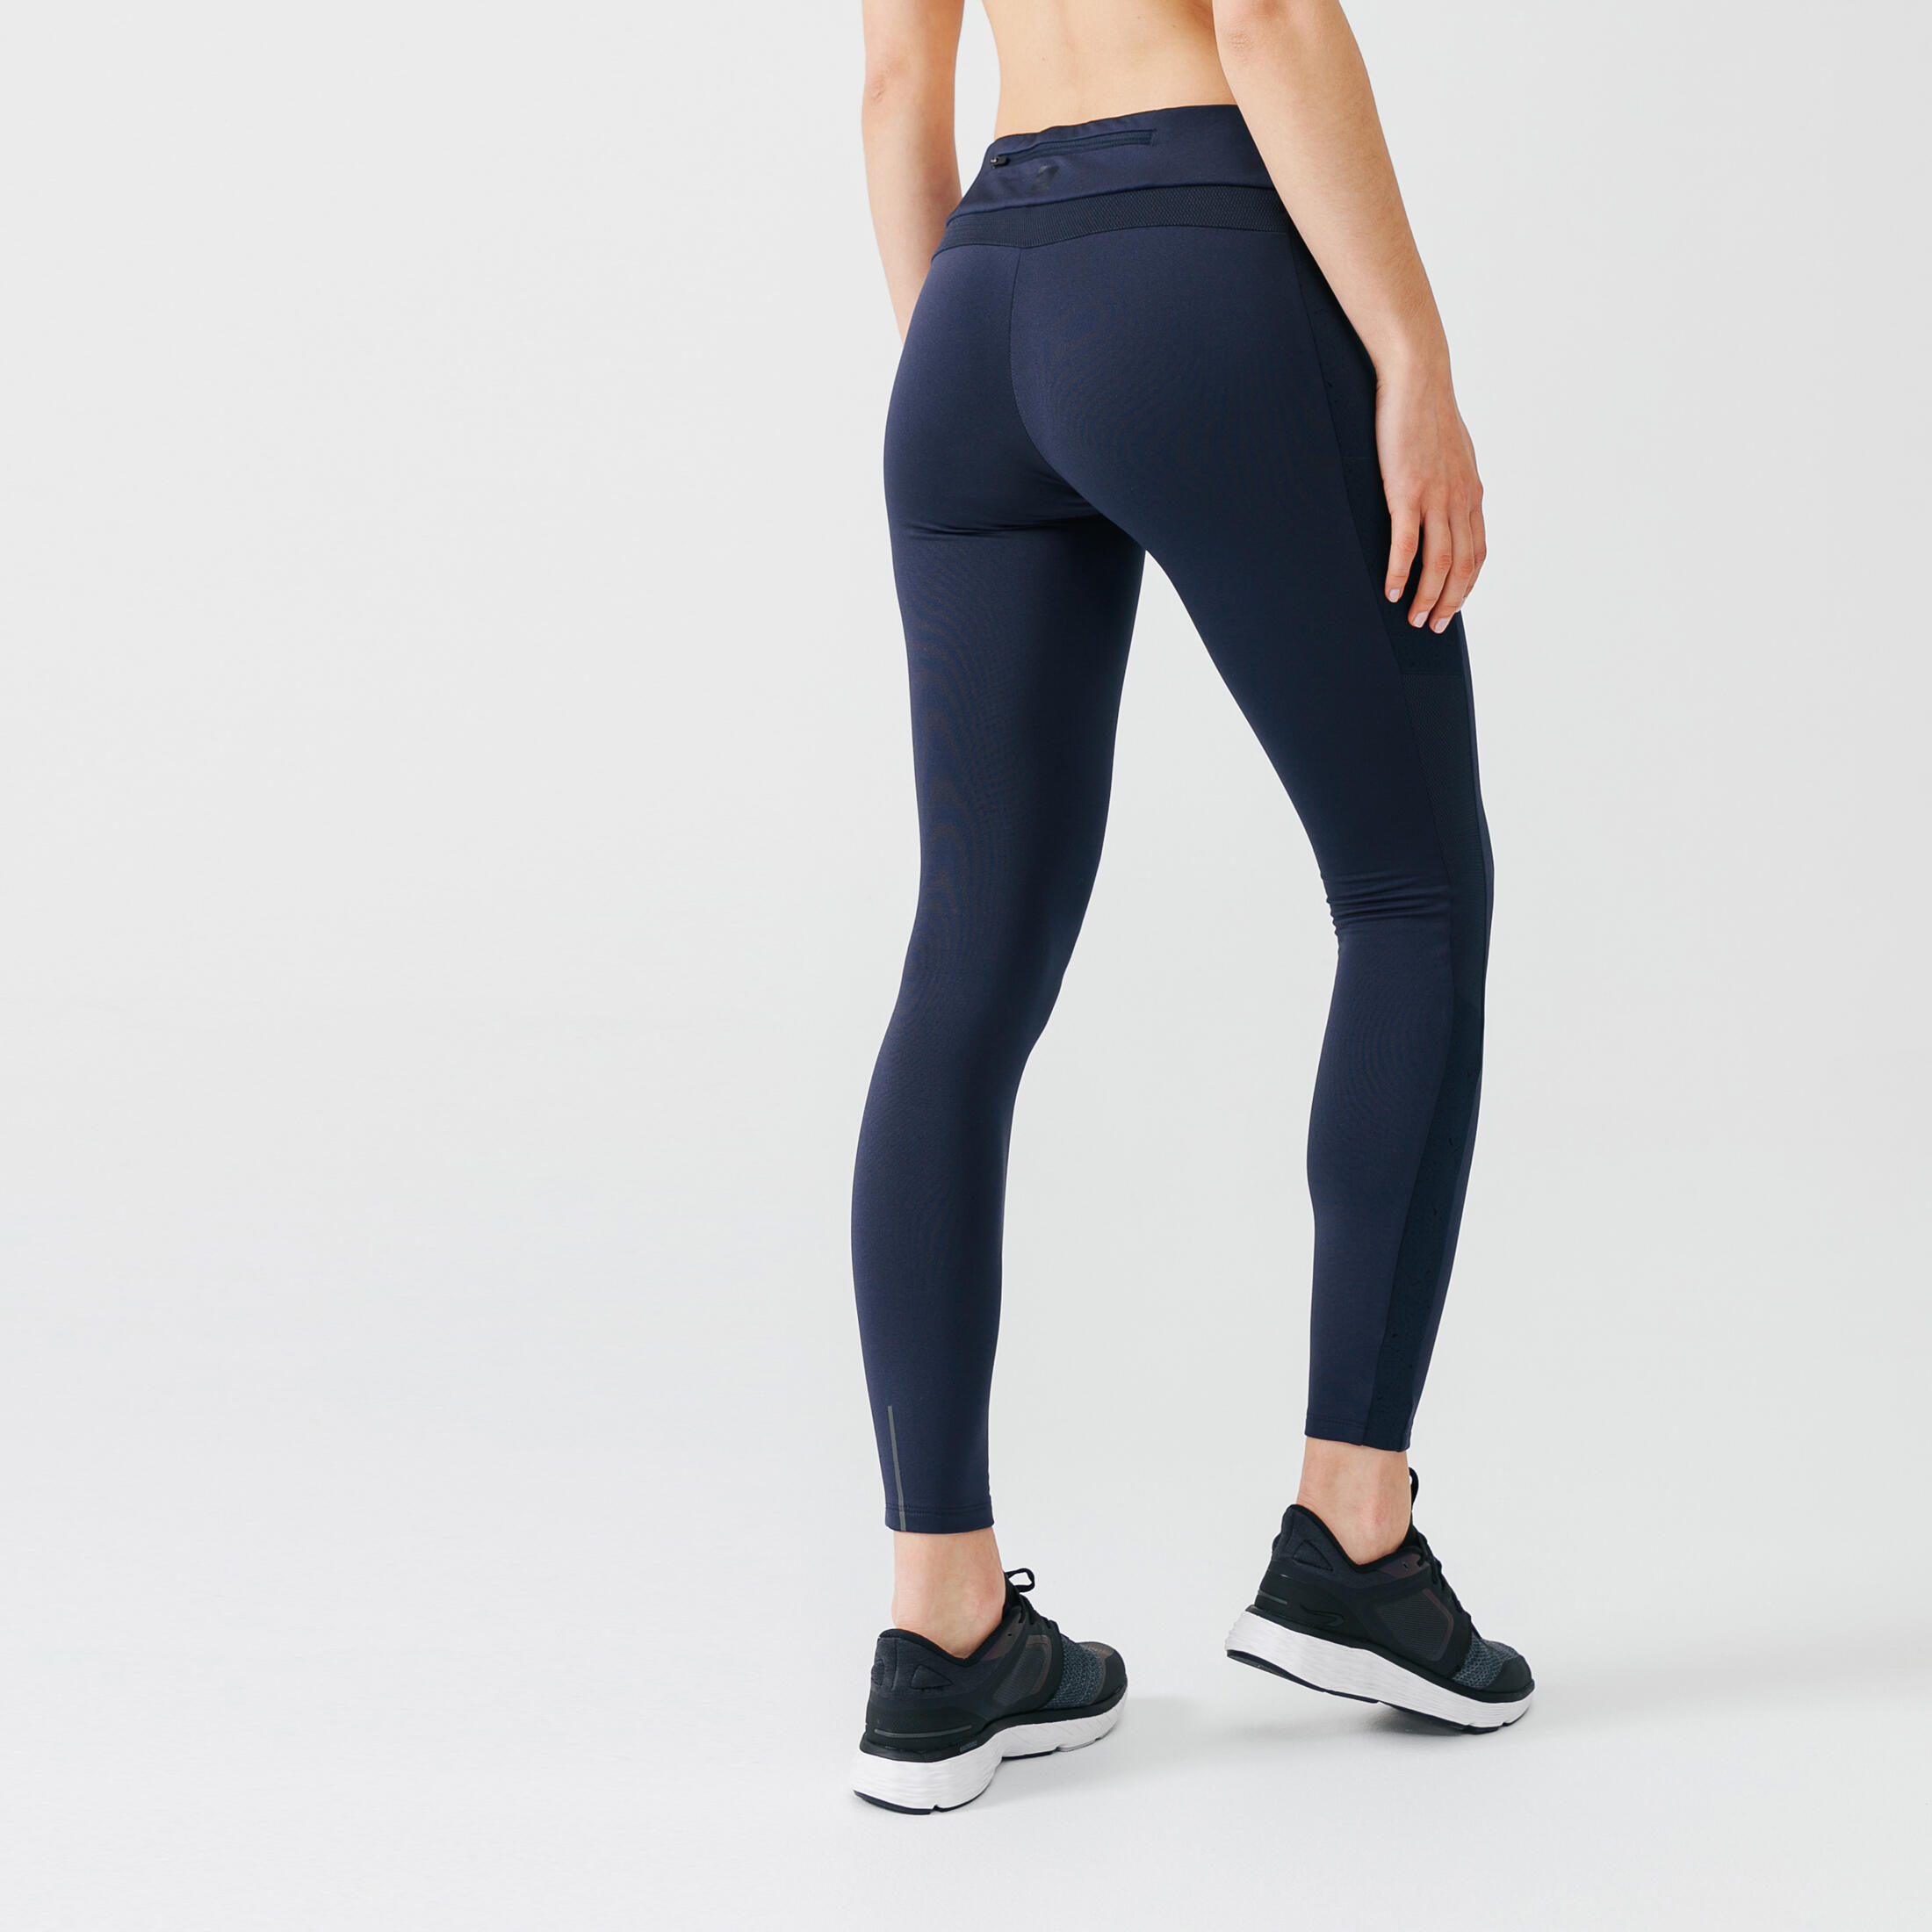 Women's long running leggings Warm+ - dark blue 2/9